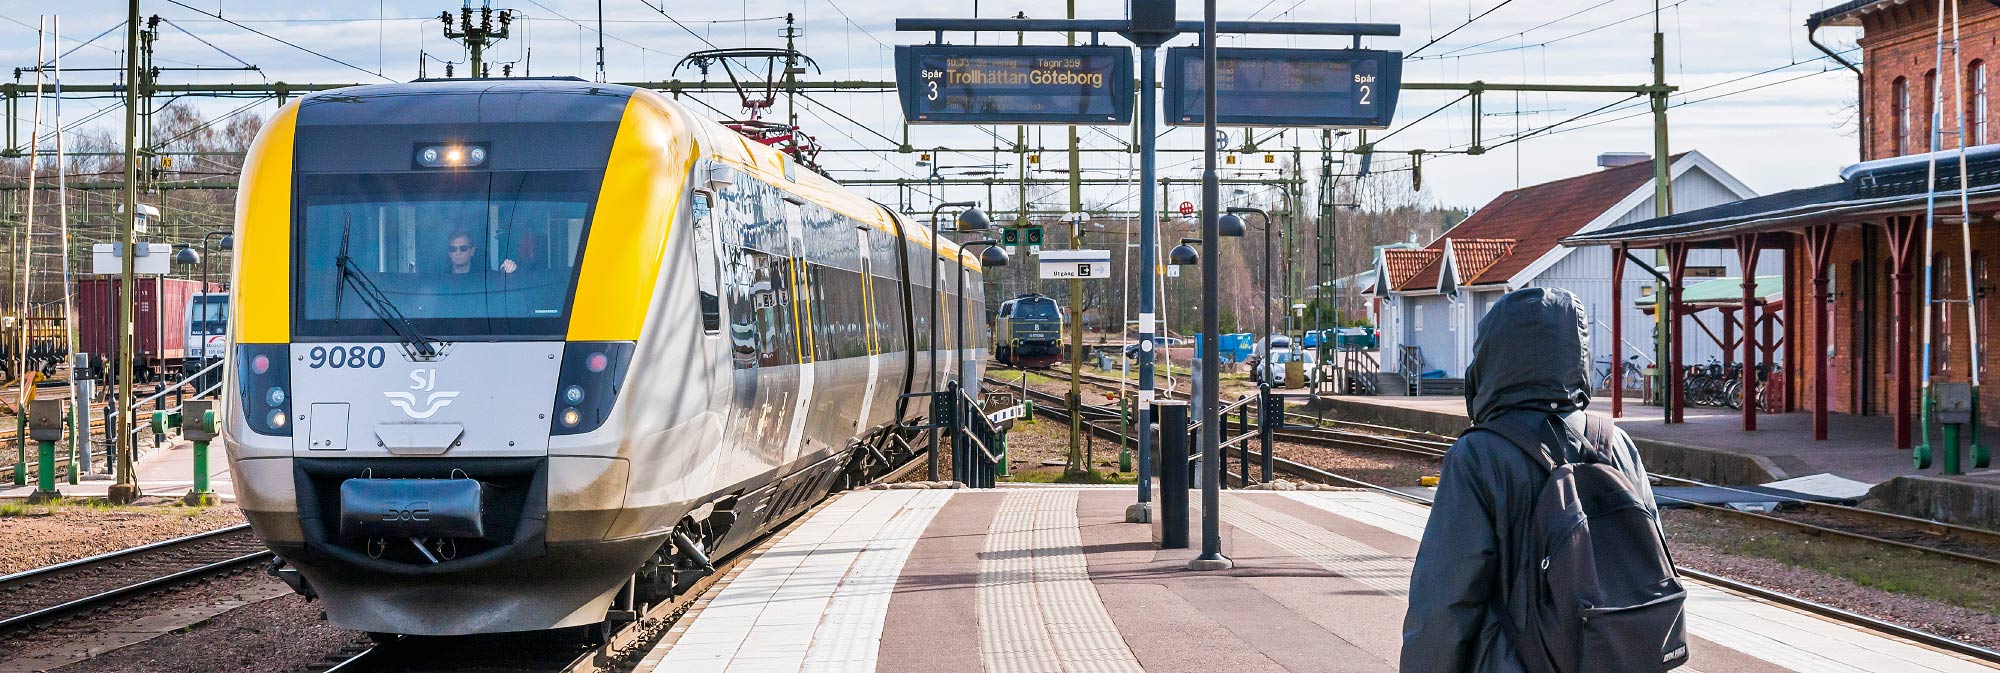 Tåg mot Göteborg ankommer Kil 2014